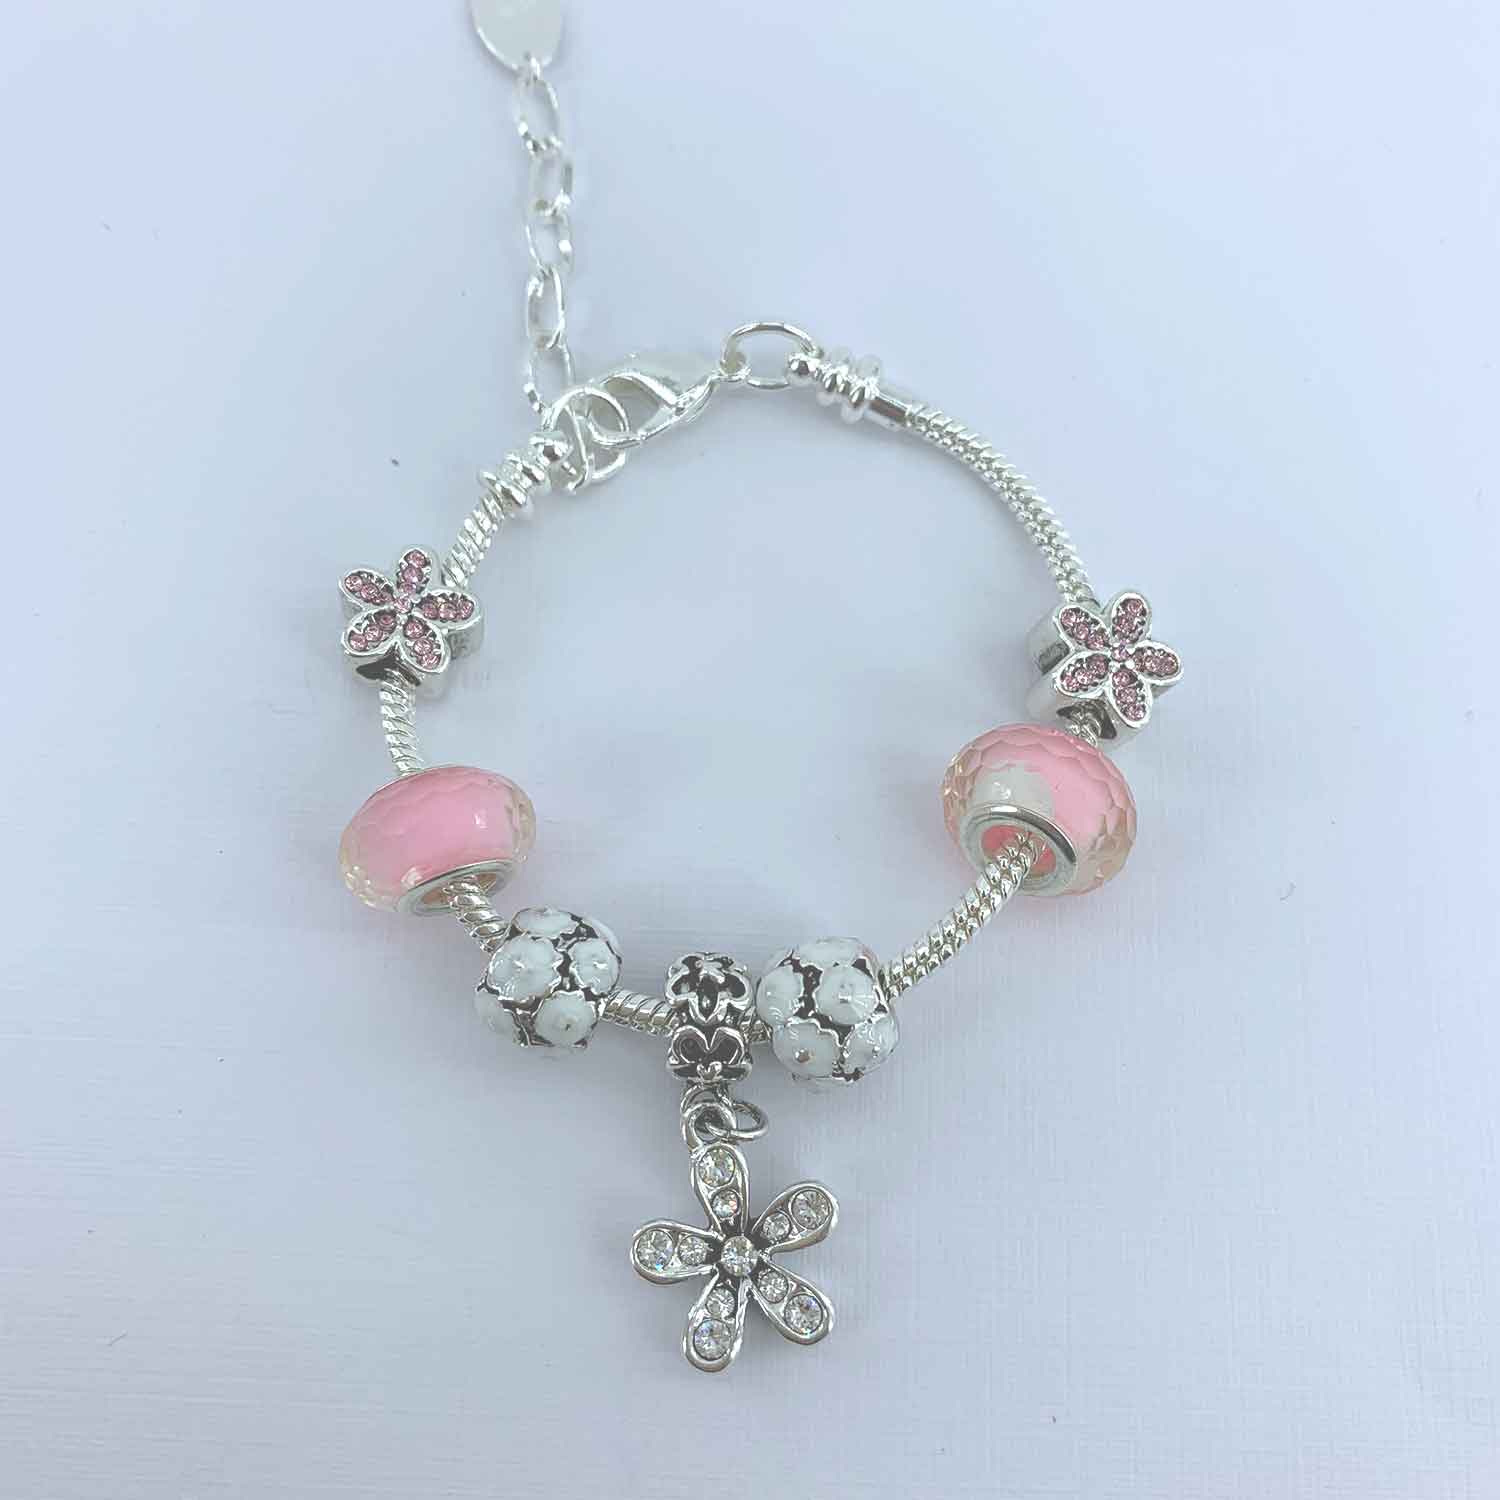 Pandora Inspired Full Set Beaded Charm Bracelet - Soft Pink